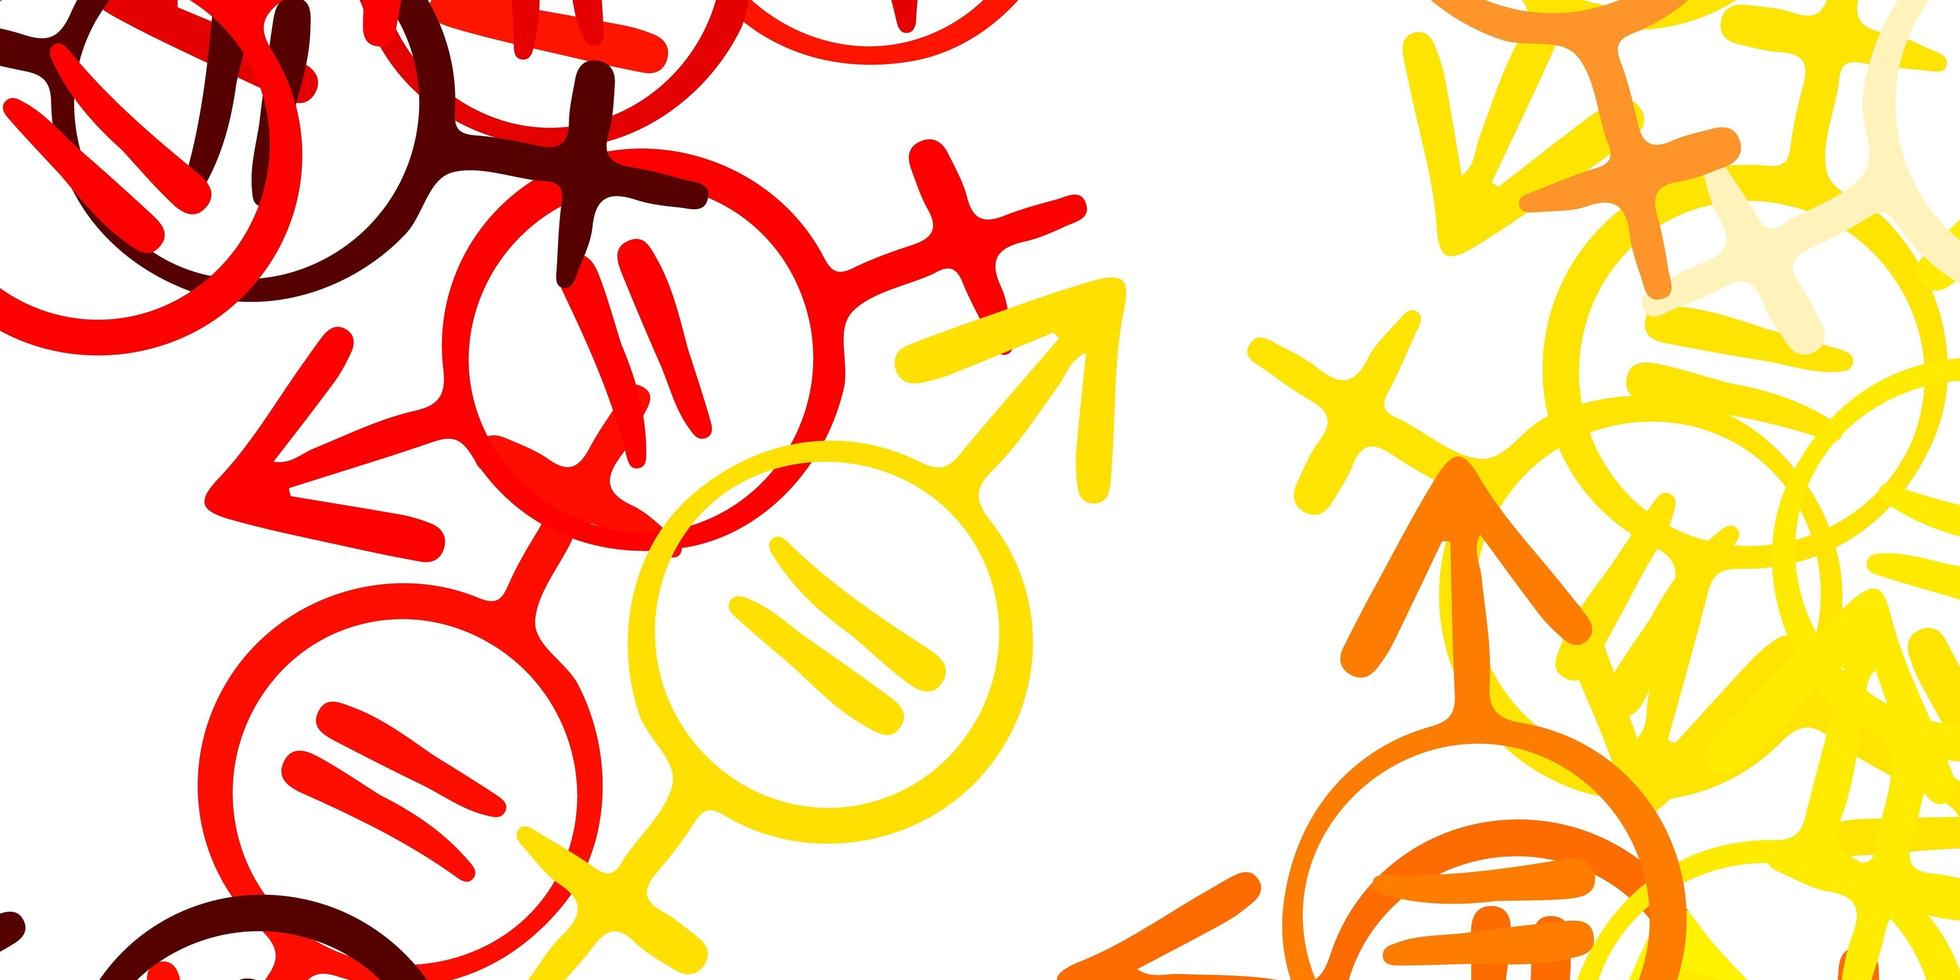 ljusröd, gul vektorbakgrund med kvinnasymboler. vektor